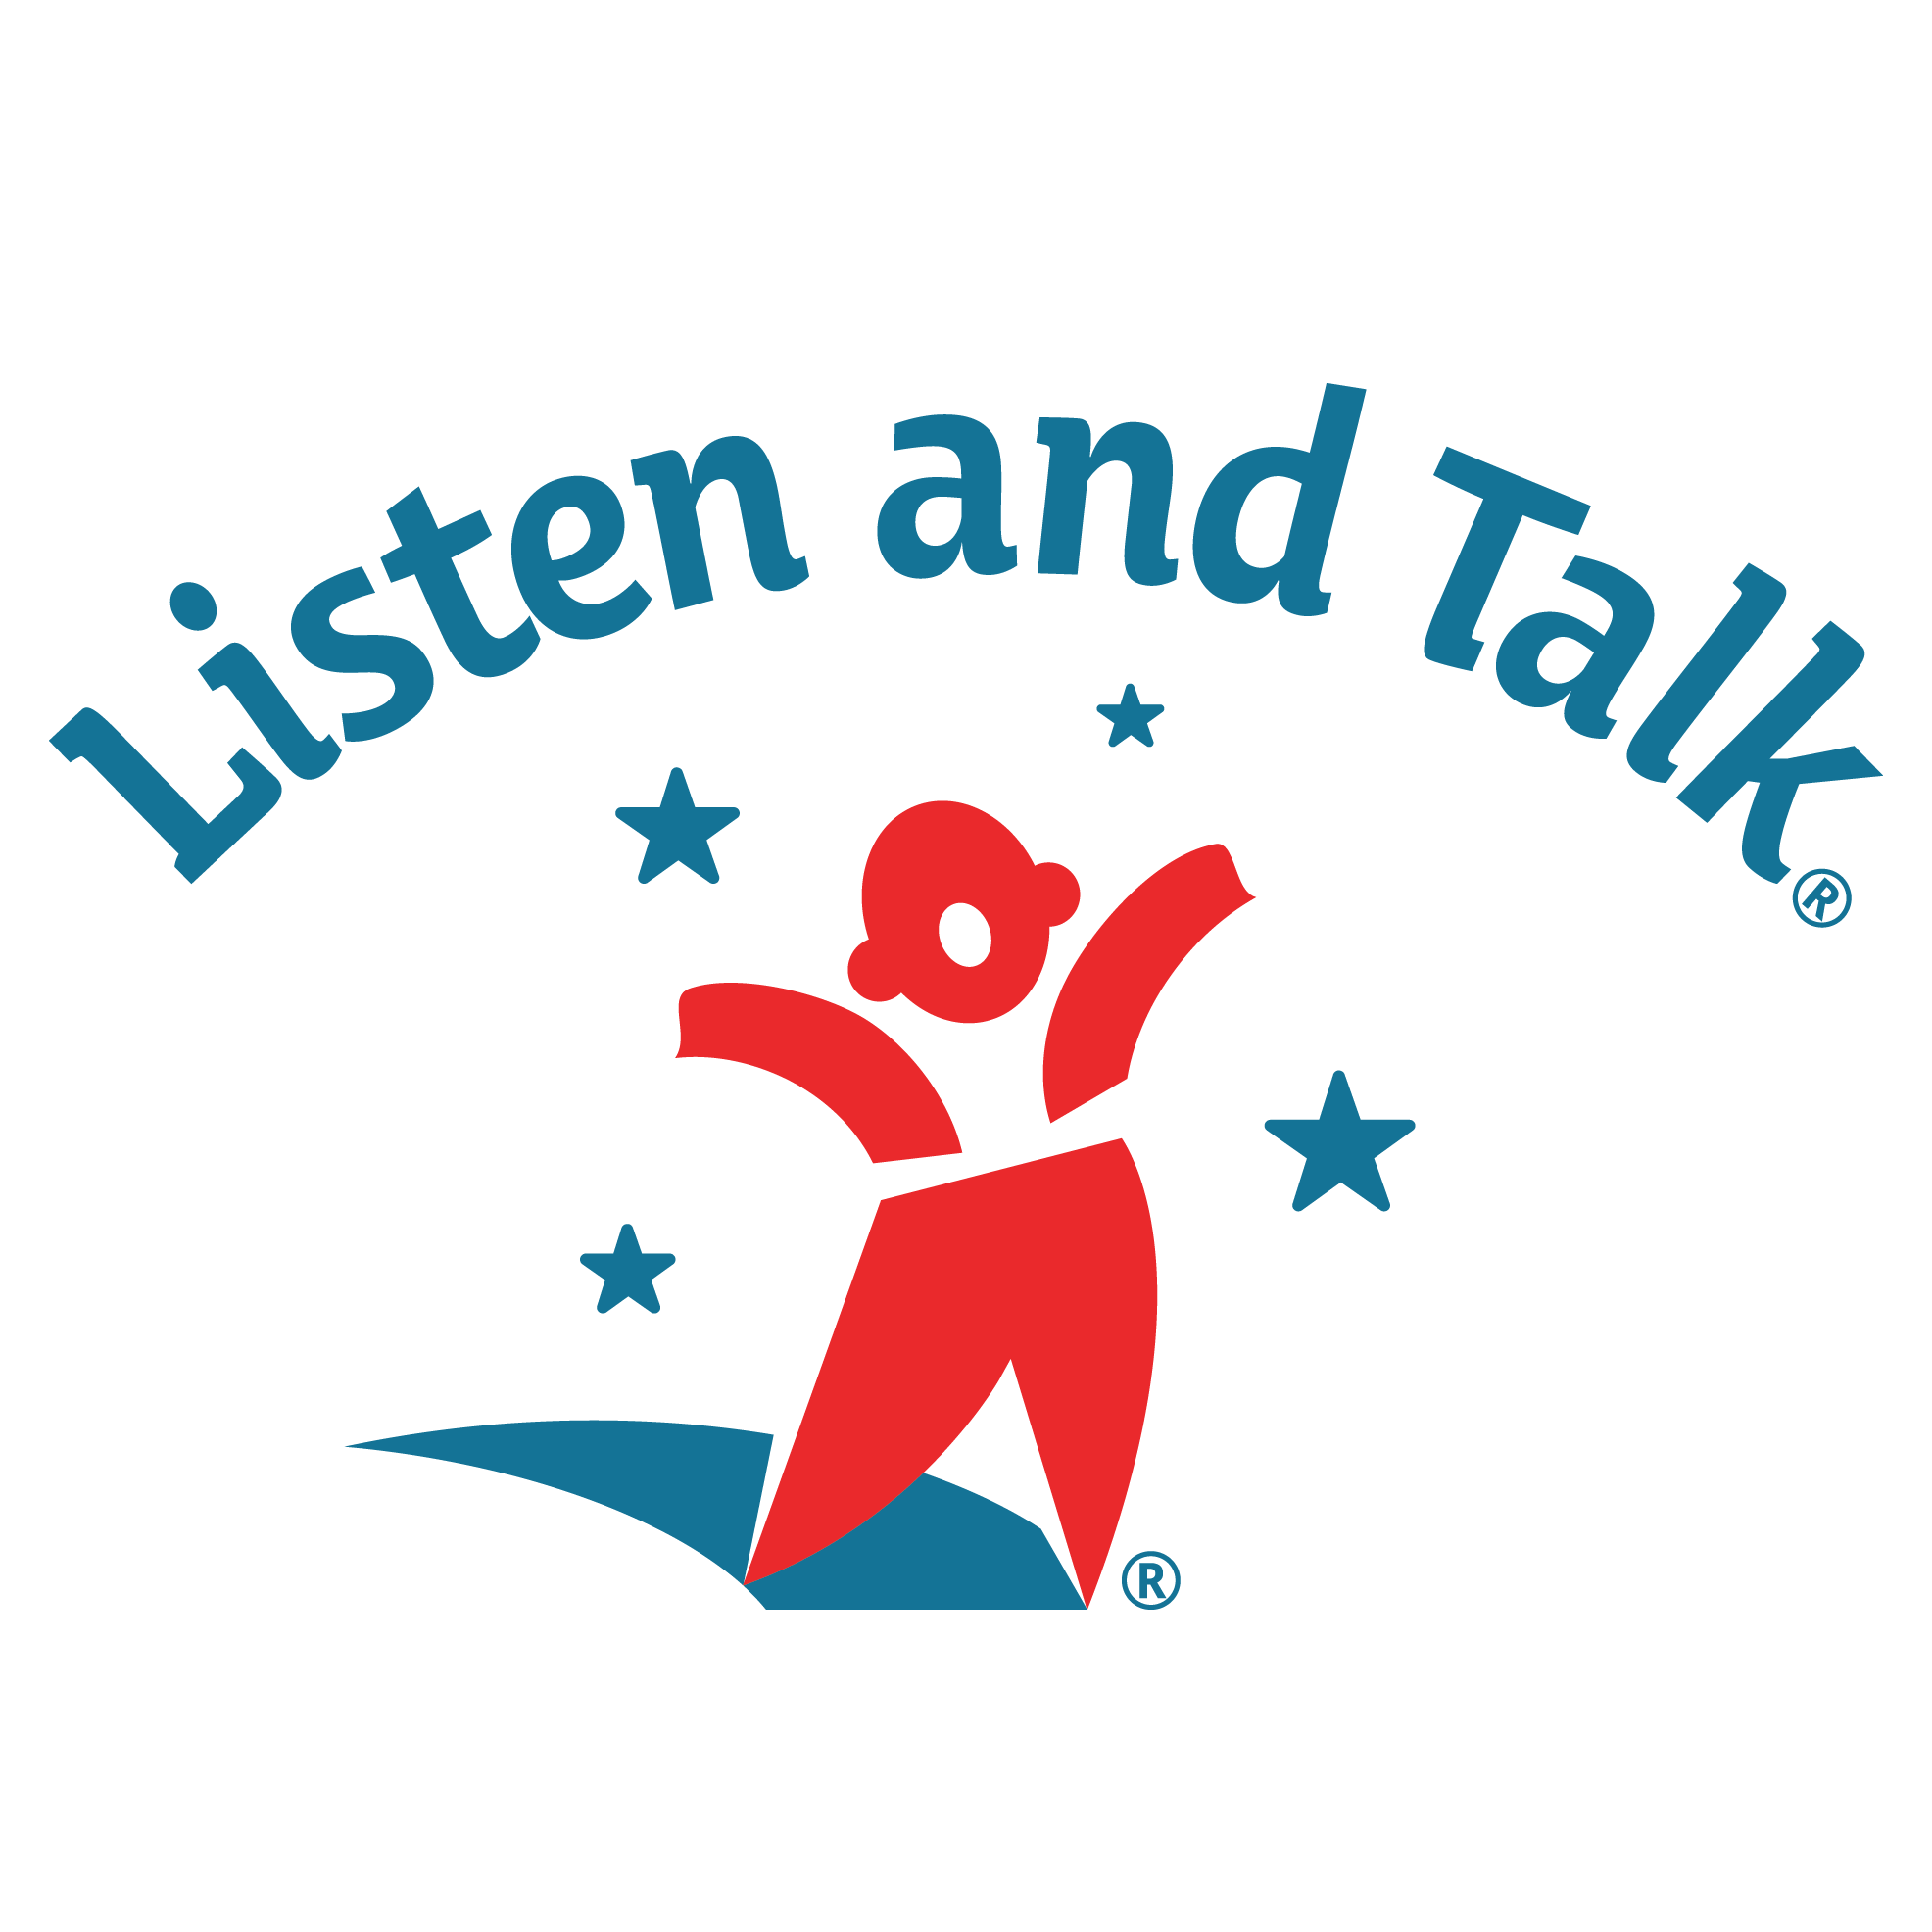 listenandtalk.org logo